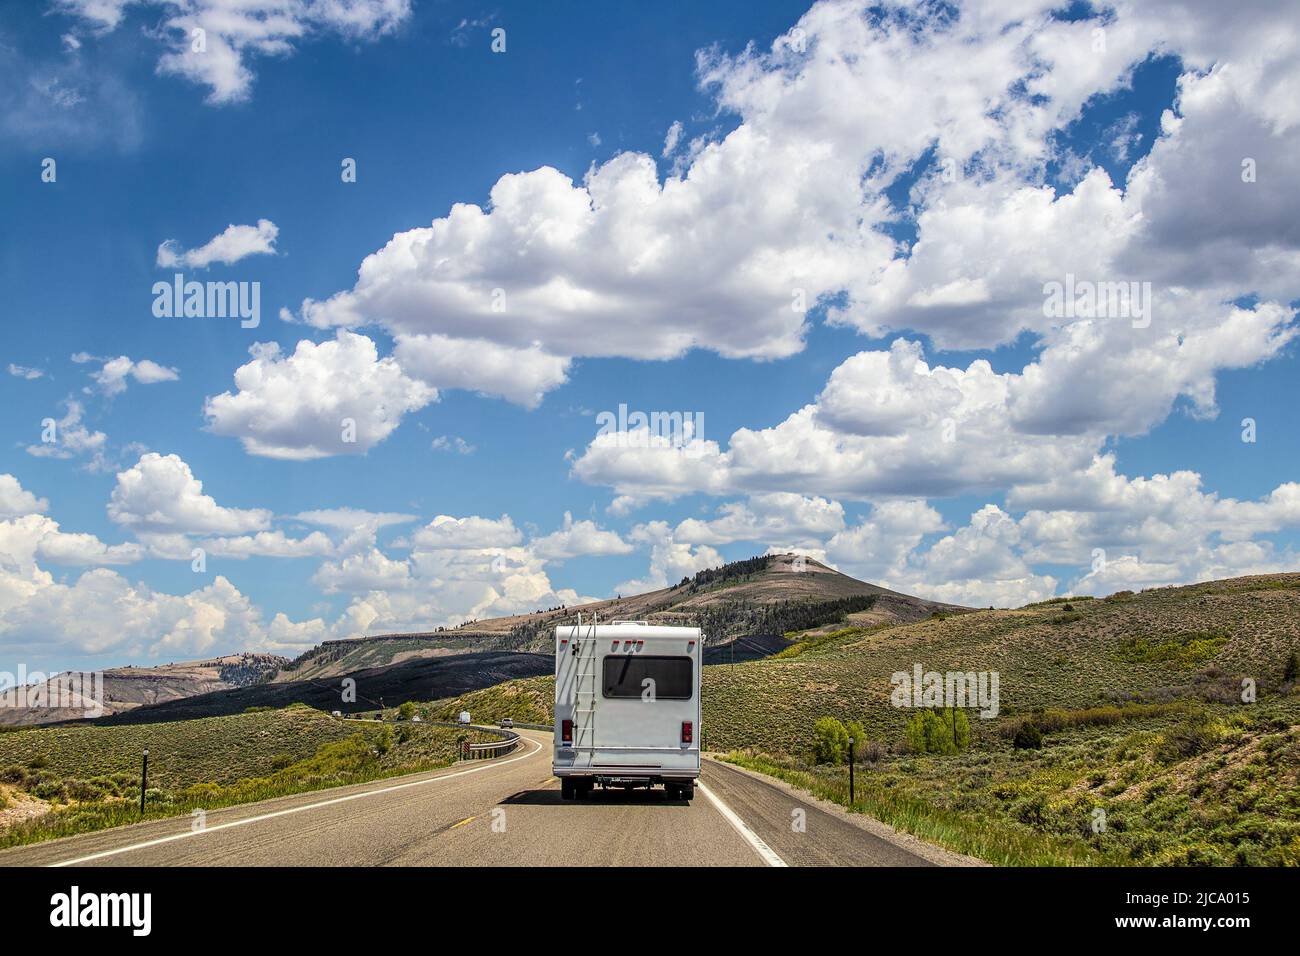 Cabine de camping blanche sur une autoroute à deux voies avec les basses montagnes du Colorado du sud et le brouet en arrière-plan Banque D'Images